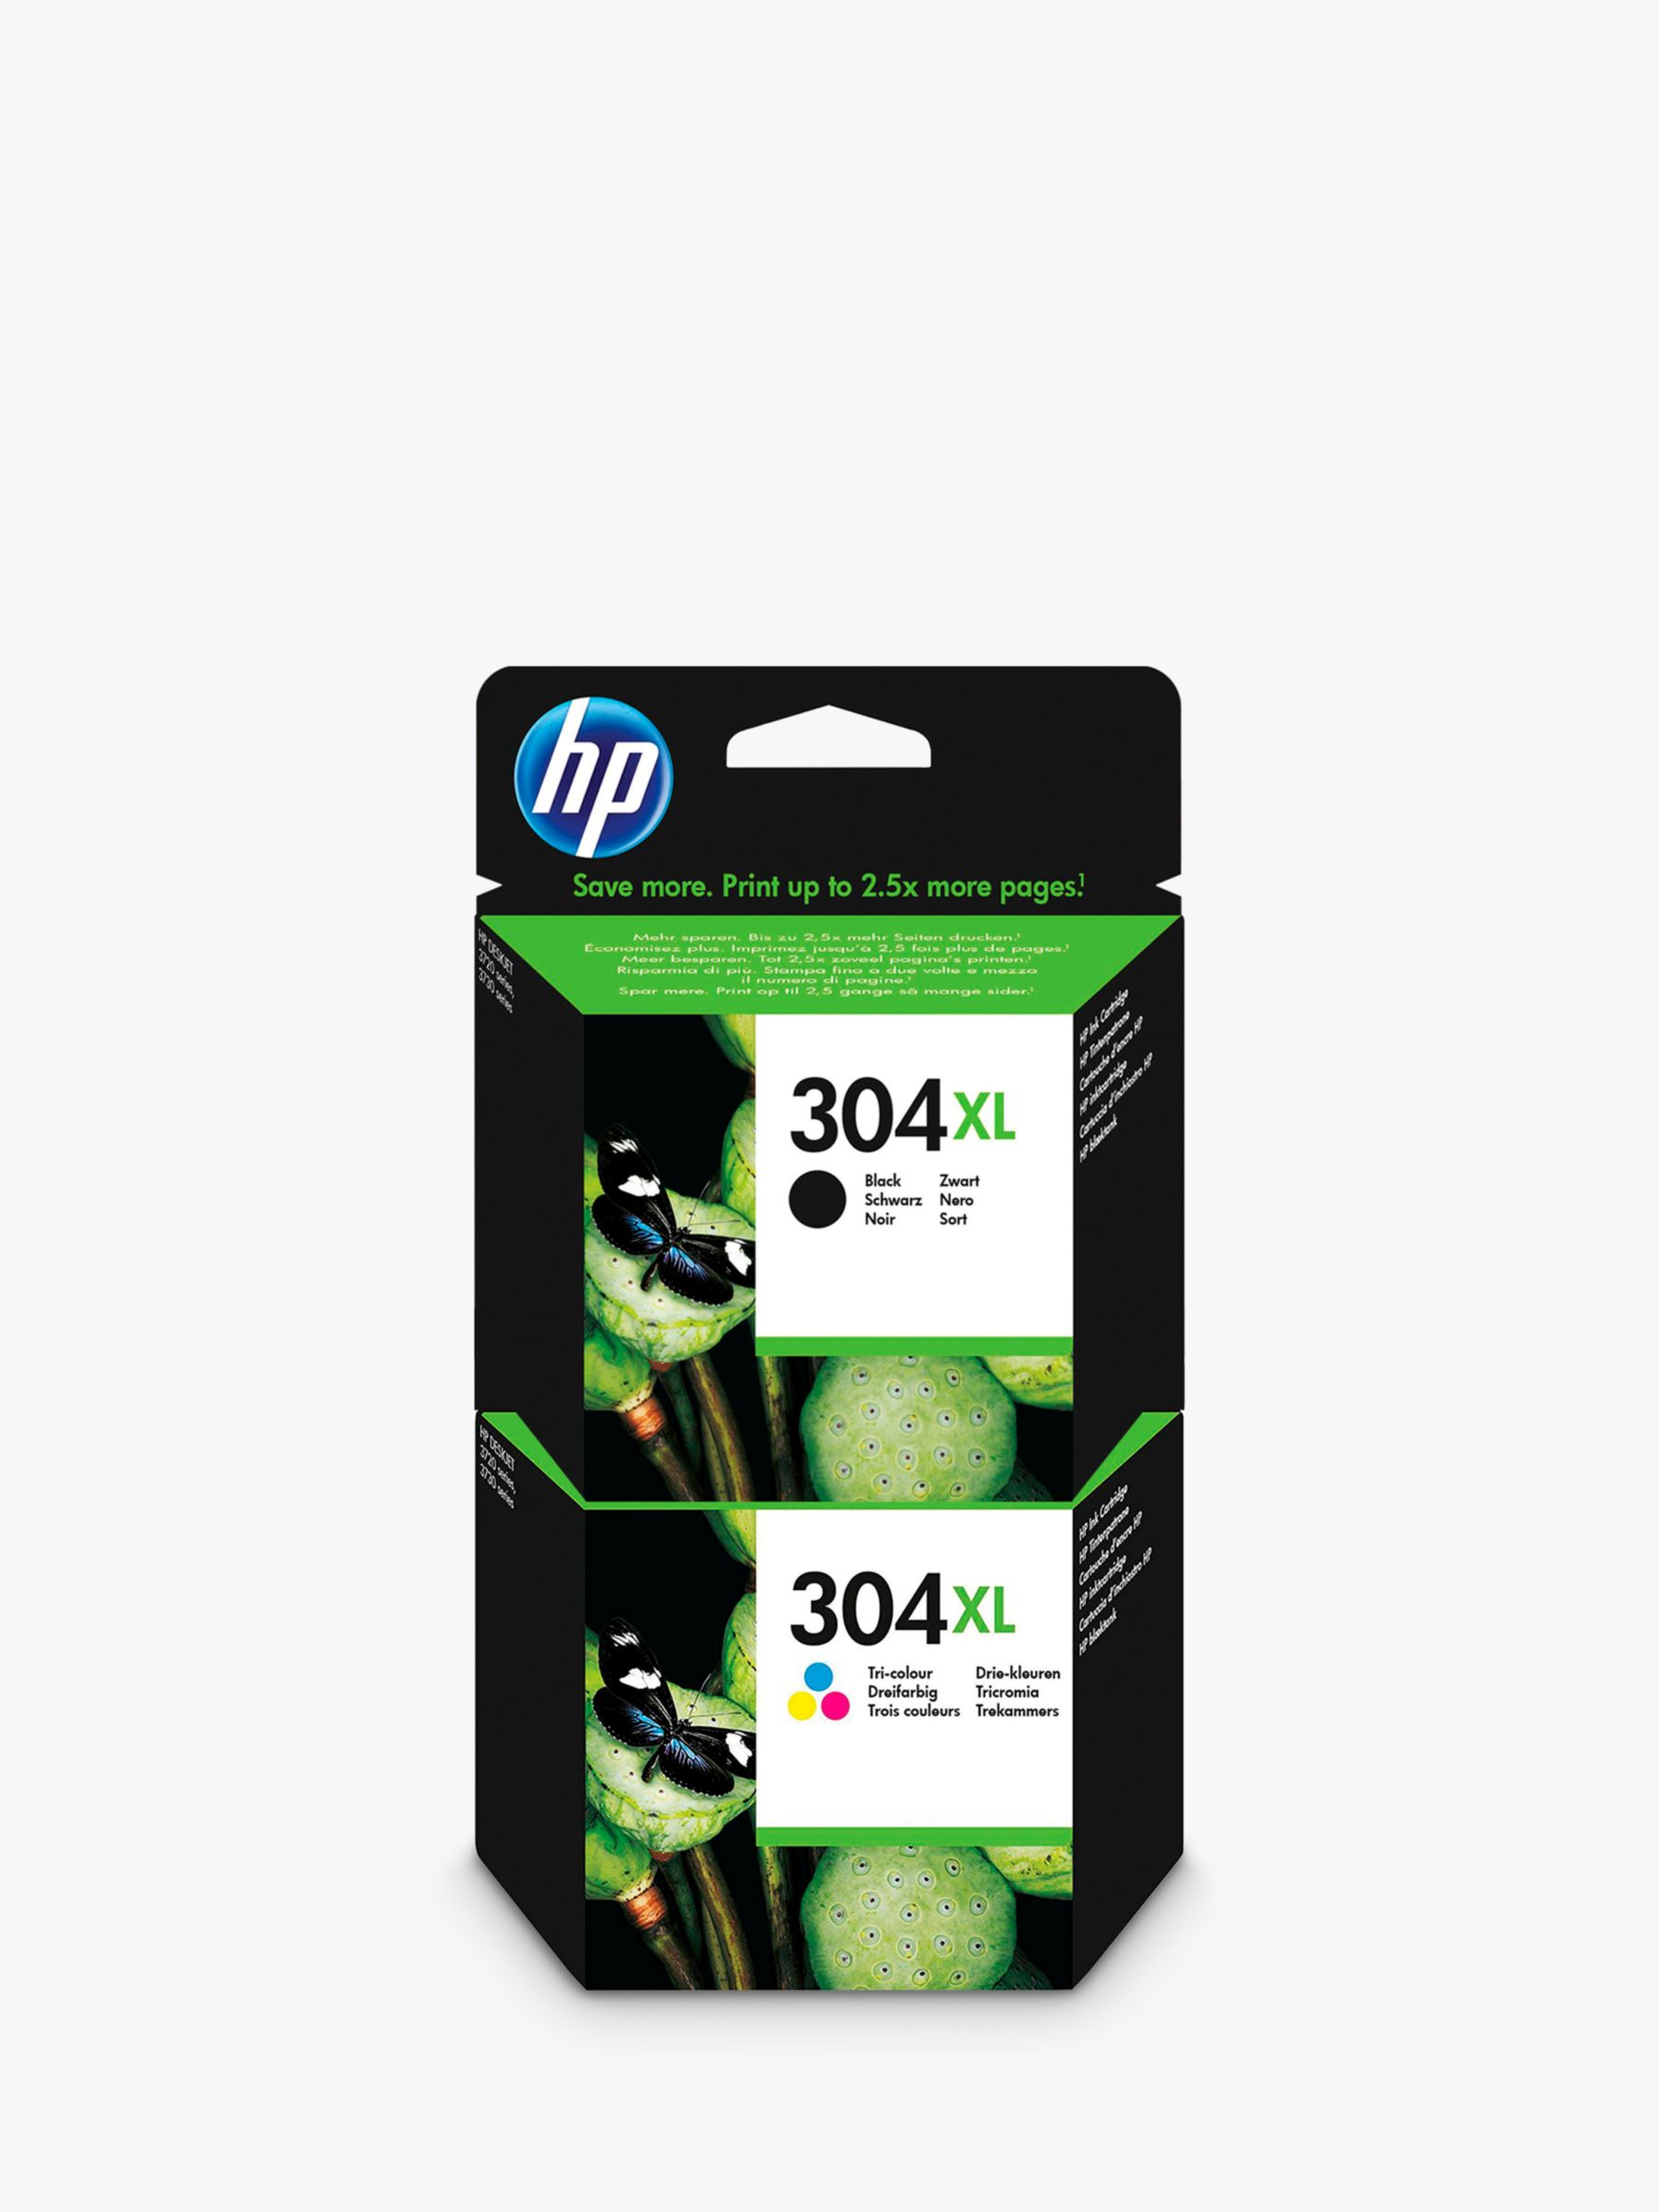 HP John & HP Cartridges Ink Printer | Lewis Partners | Ink